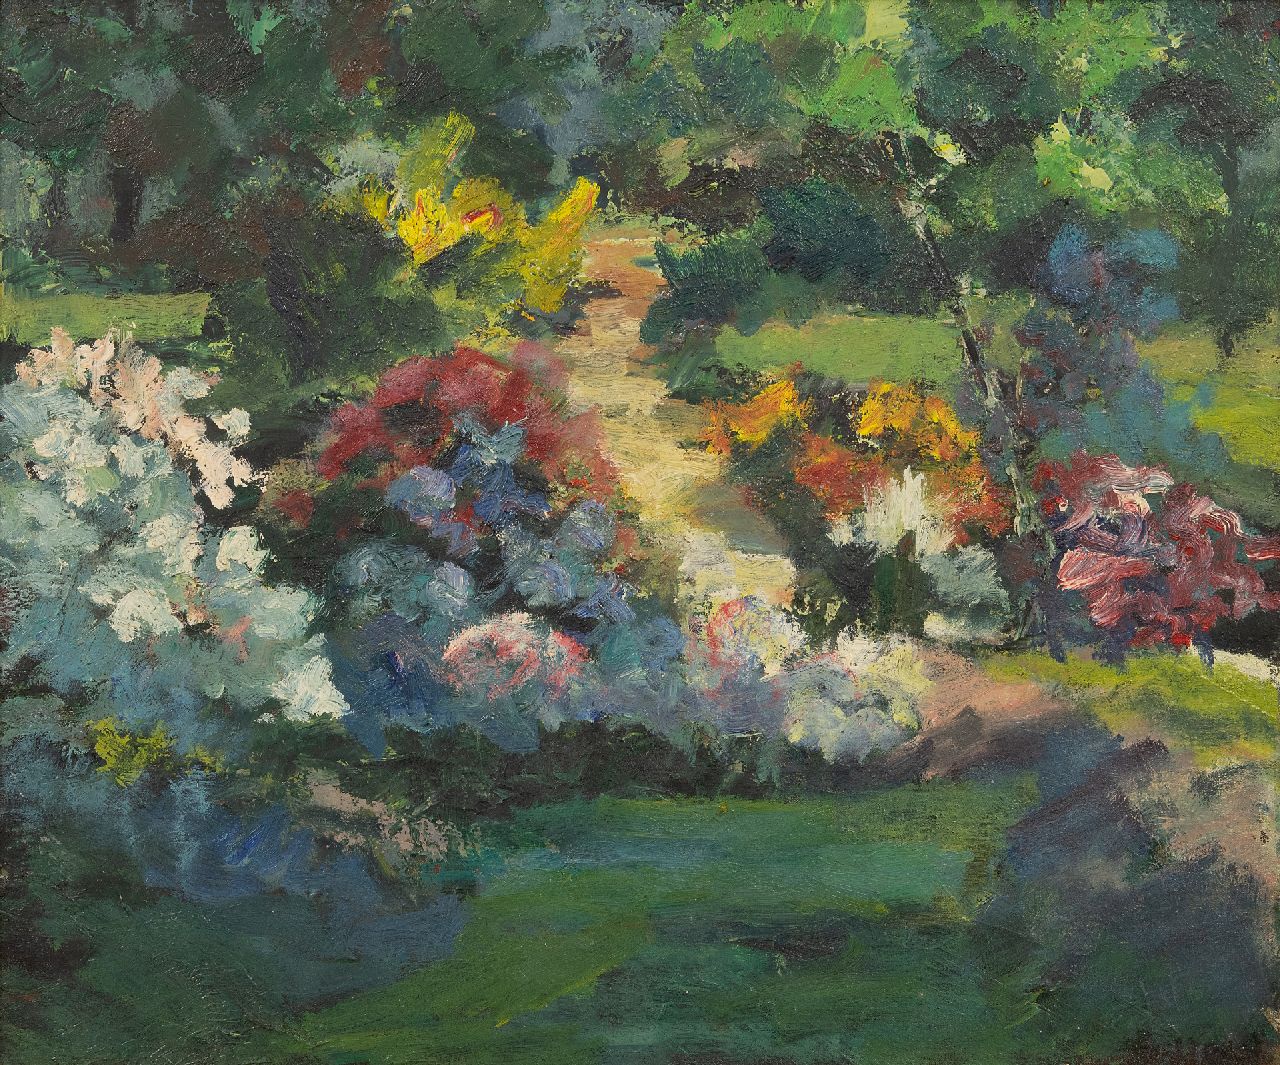 Leest J. van der | Jan van der Leest | Paintings offered for sale | Flower garden, oil on canvas 50.0 x 60.2 cm, signed l.r.